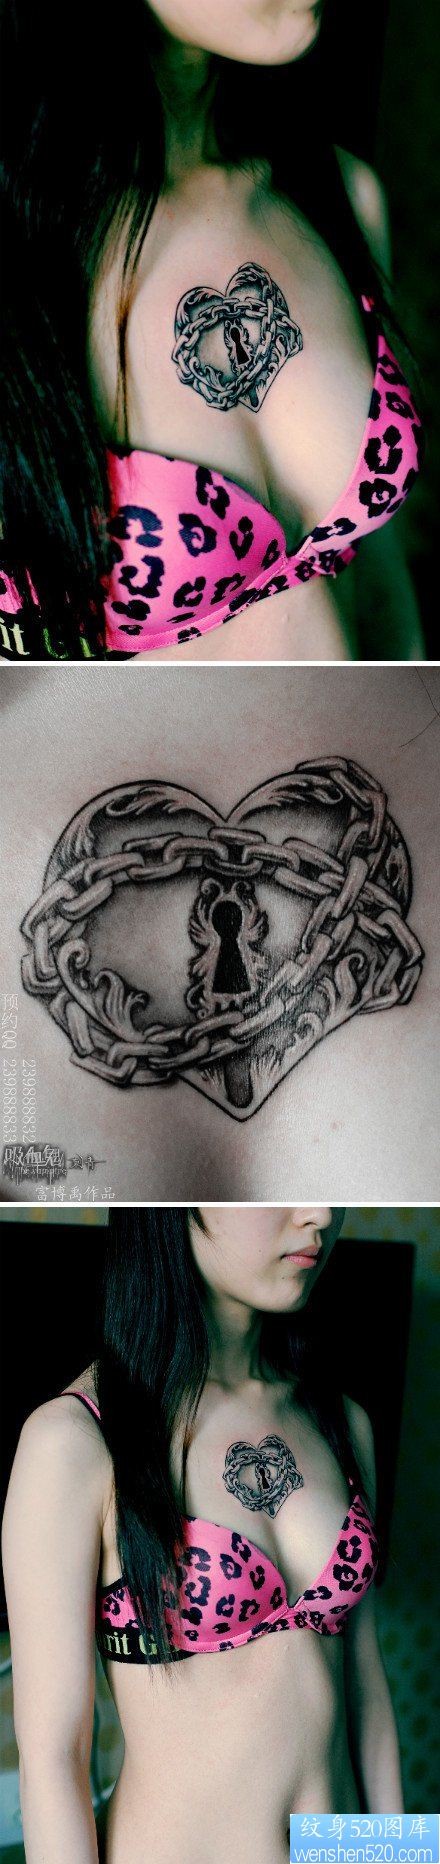 女人胸前精美的爱心锁纹身图片